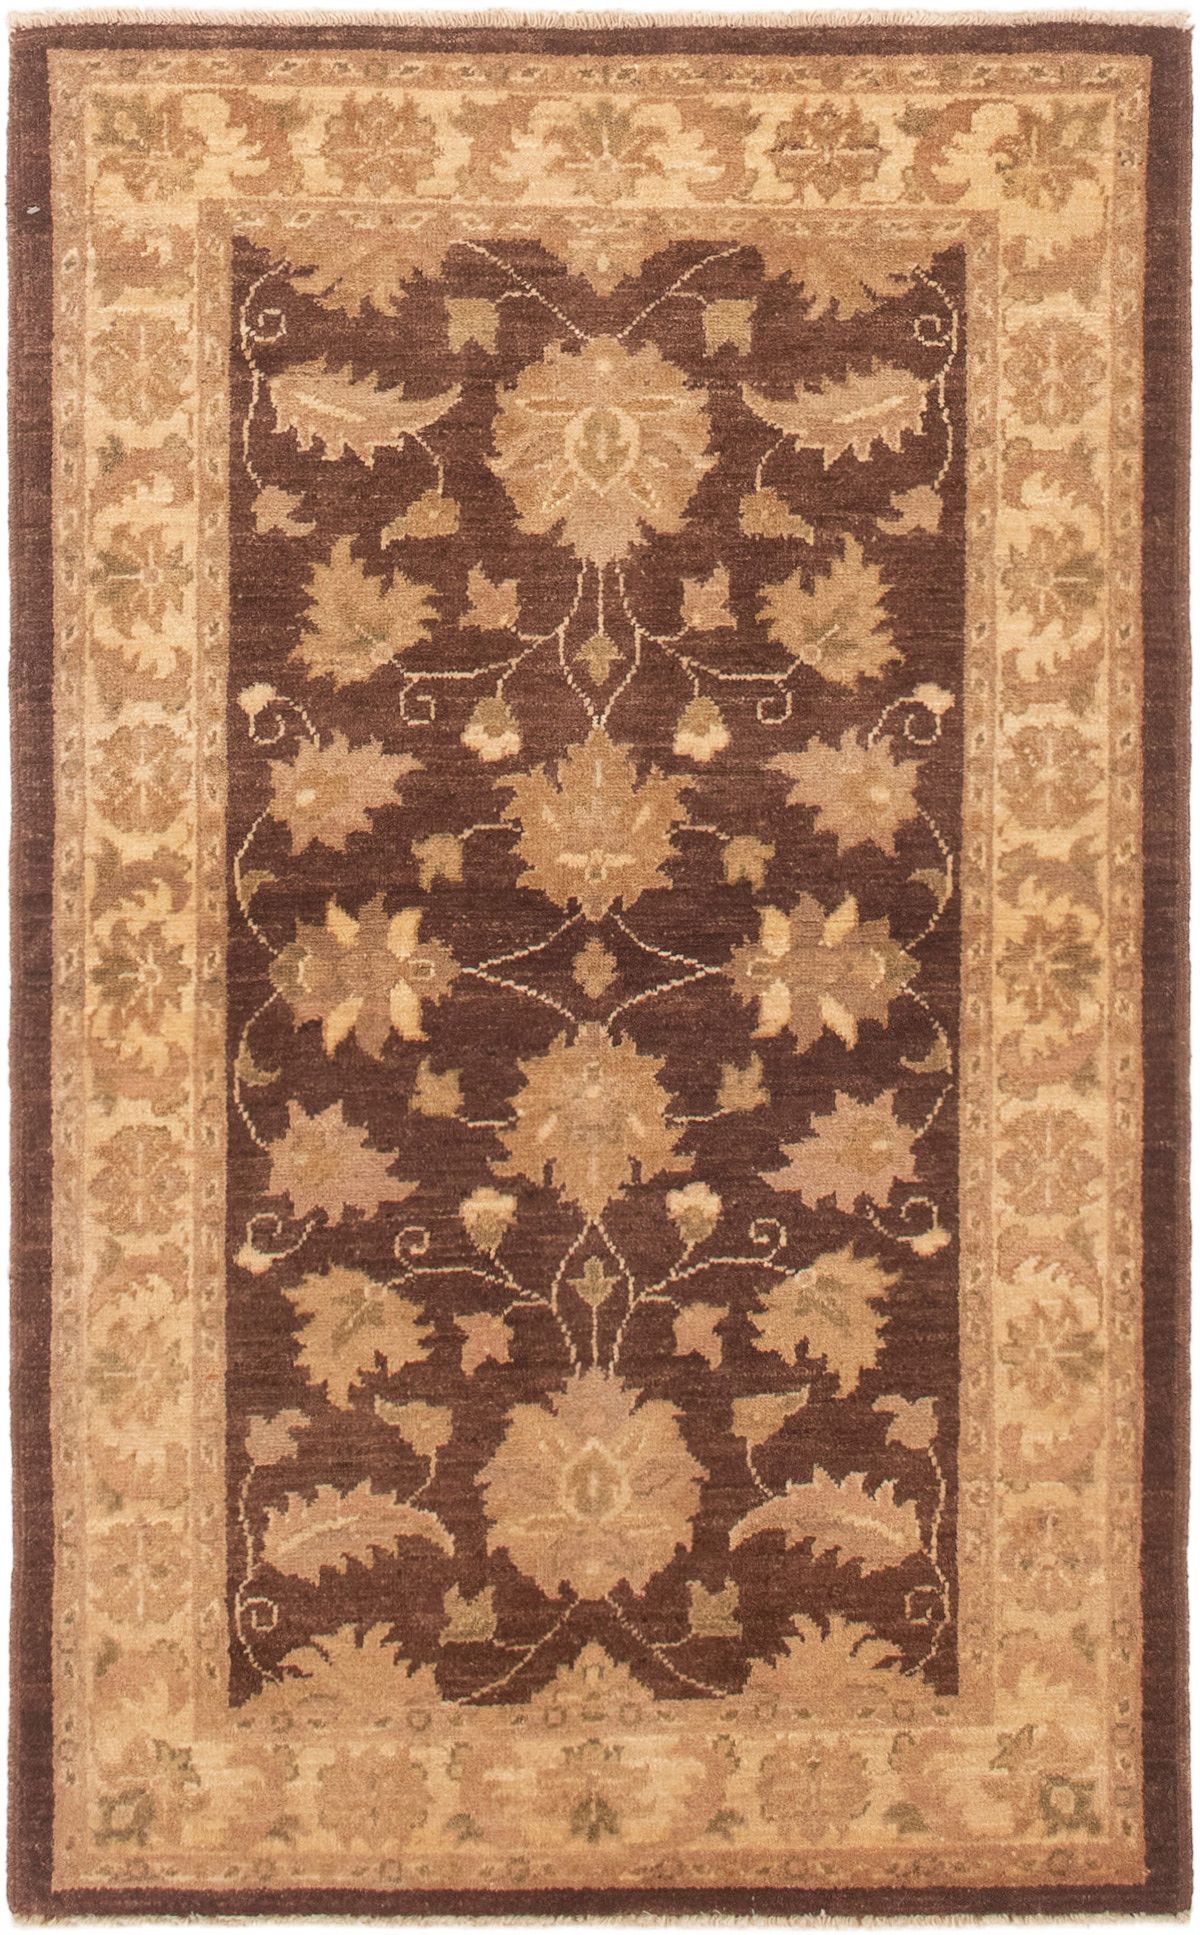 Hand-knotted Peshawar Finest Dark Brown Wool Rug 3'3" x 5'3" Size: 3'3" x 5'3"  